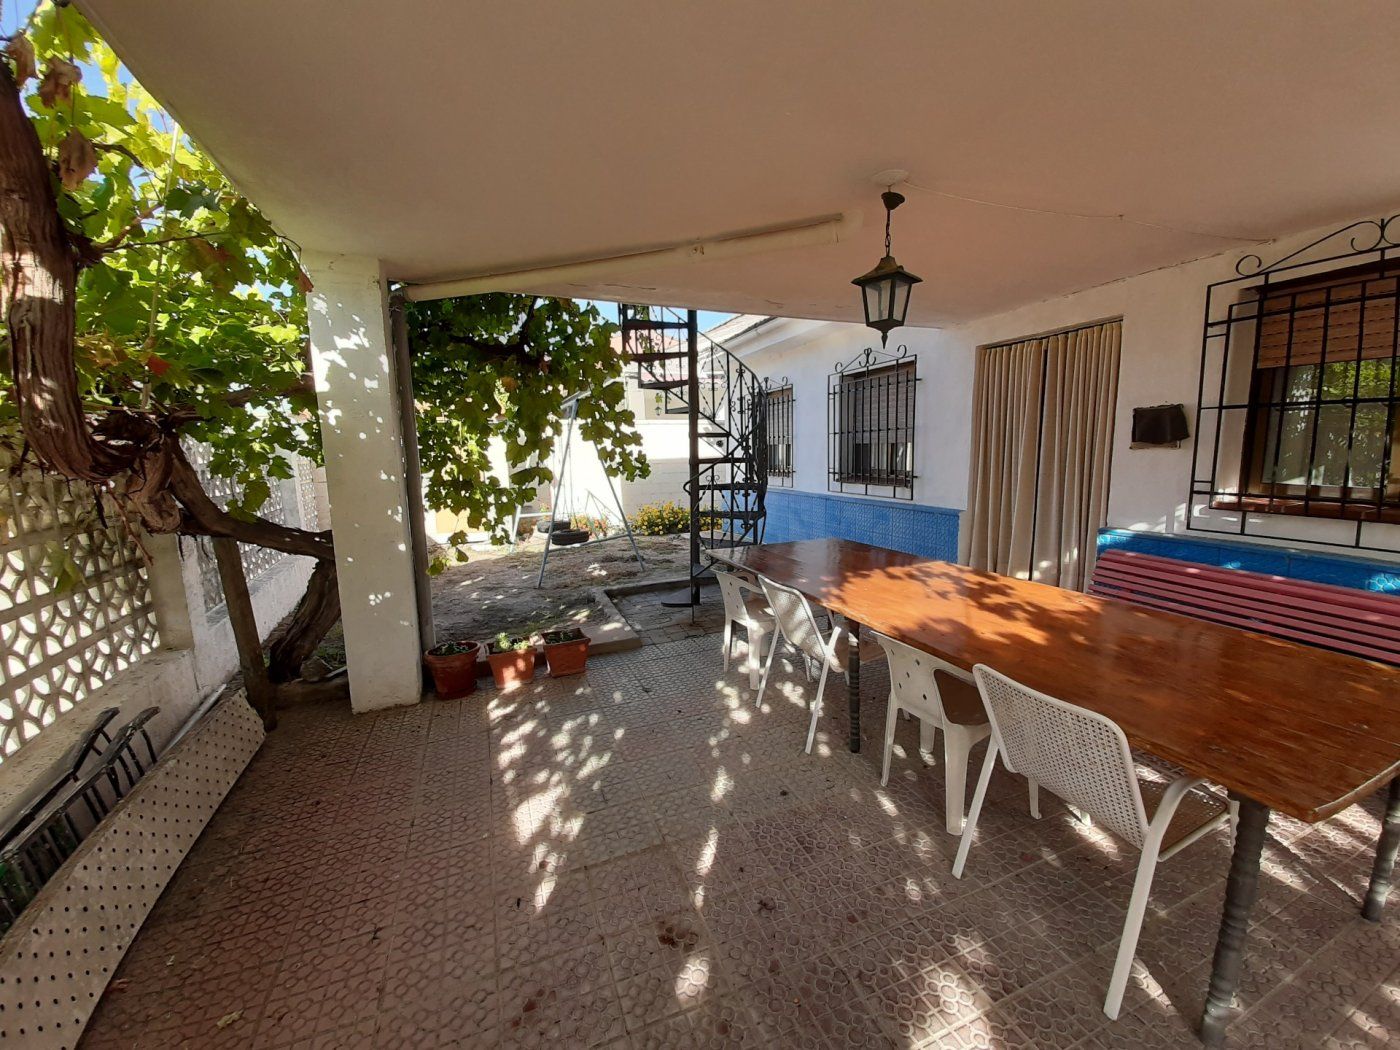  Juego de mesa de terraza al aire libre para 2 personas sillas  de comedor (mesa cuadrangular + dos sillas) : Patio, Césped y Jardín